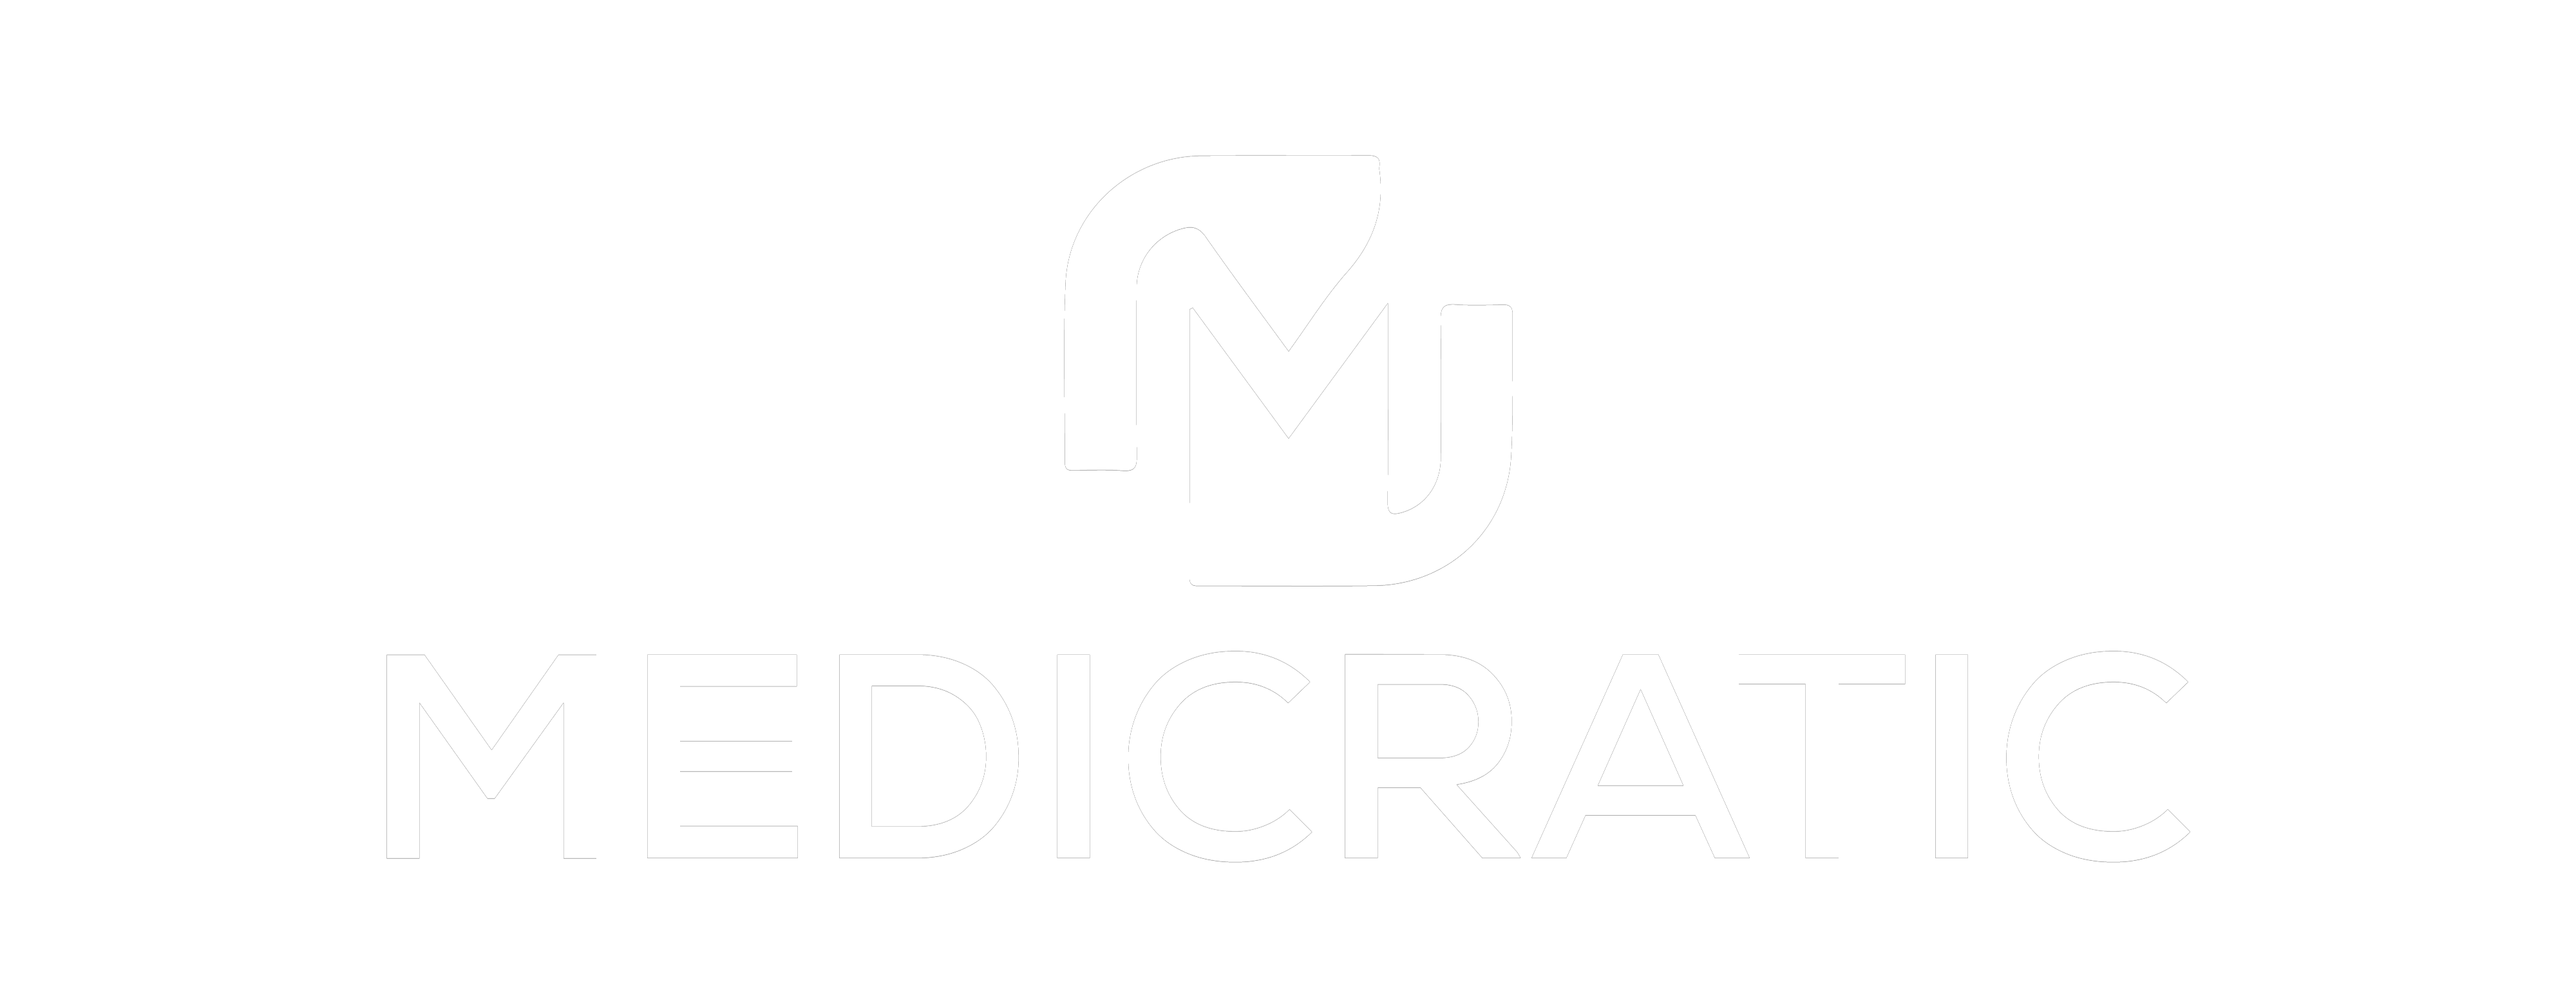 Medicratic logo